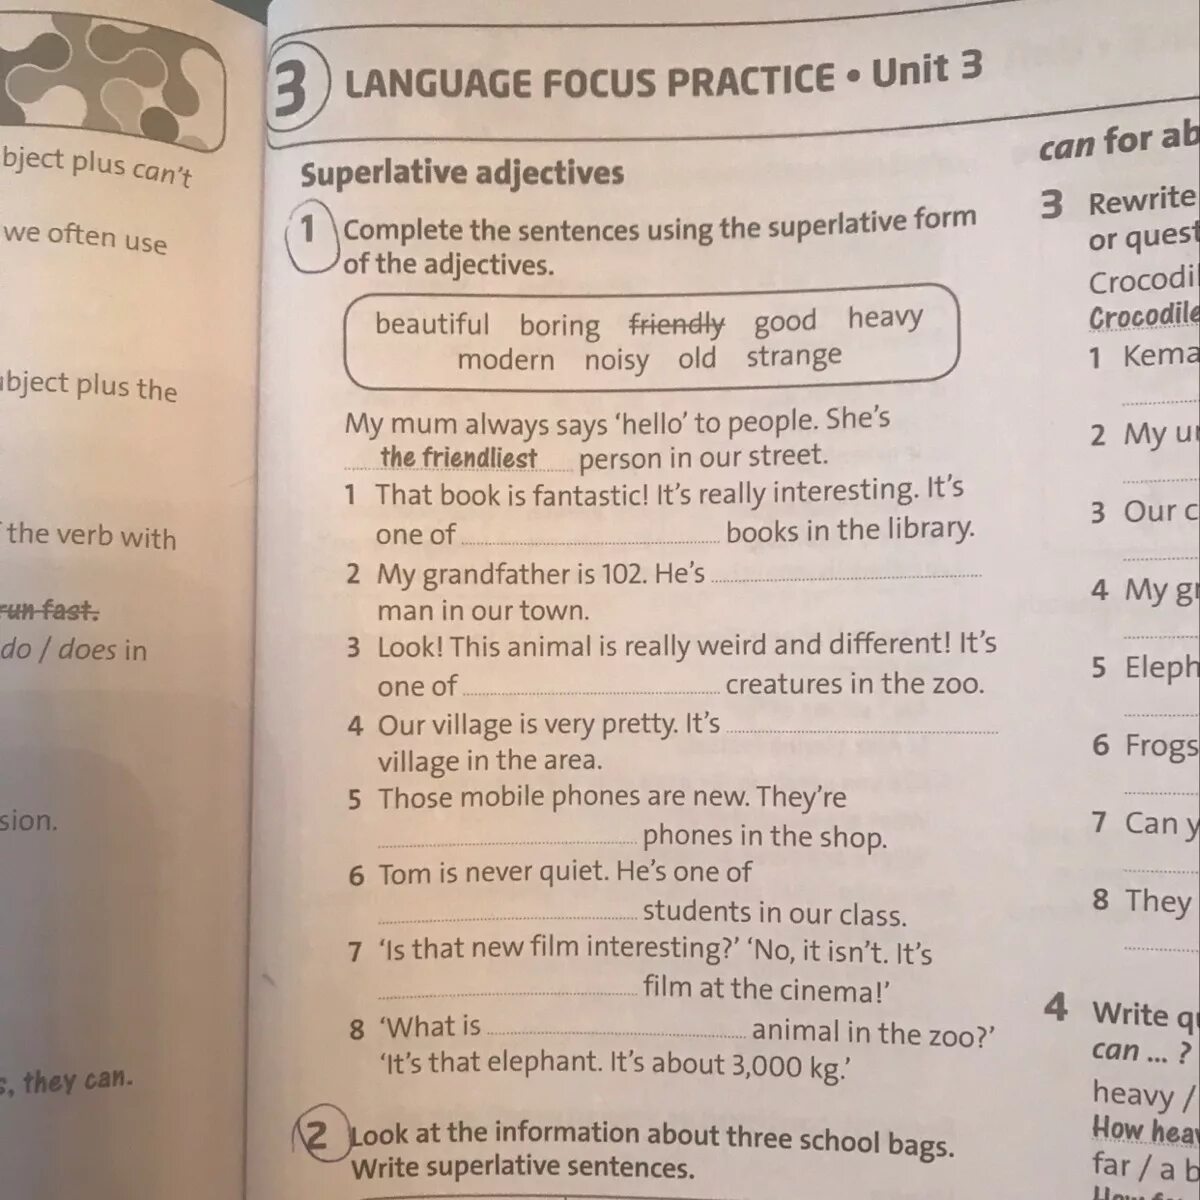 Focus 4 unit 4. Language Focus. Language Focus Extra ответы. Language Focus правило. Фокус Units.